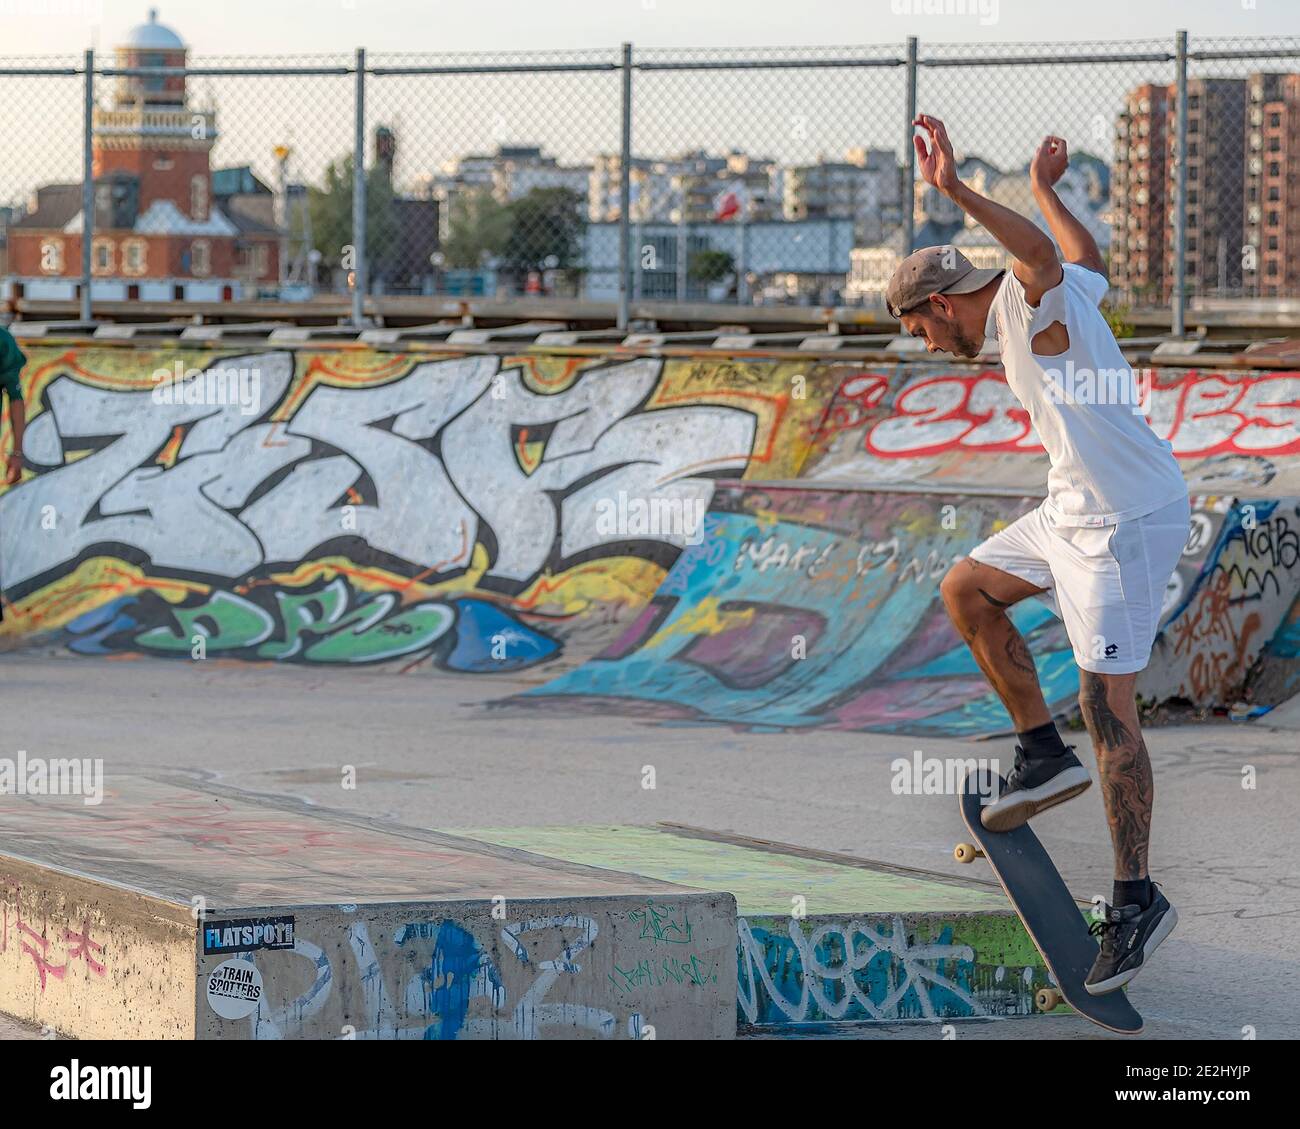 HELSINGBORG, SVEZIA - 08 AGOSTO 2020: Un giovane maschio che fa trucchi sul suo skateboard al pixlapiren skate Park in città. Foto Stock